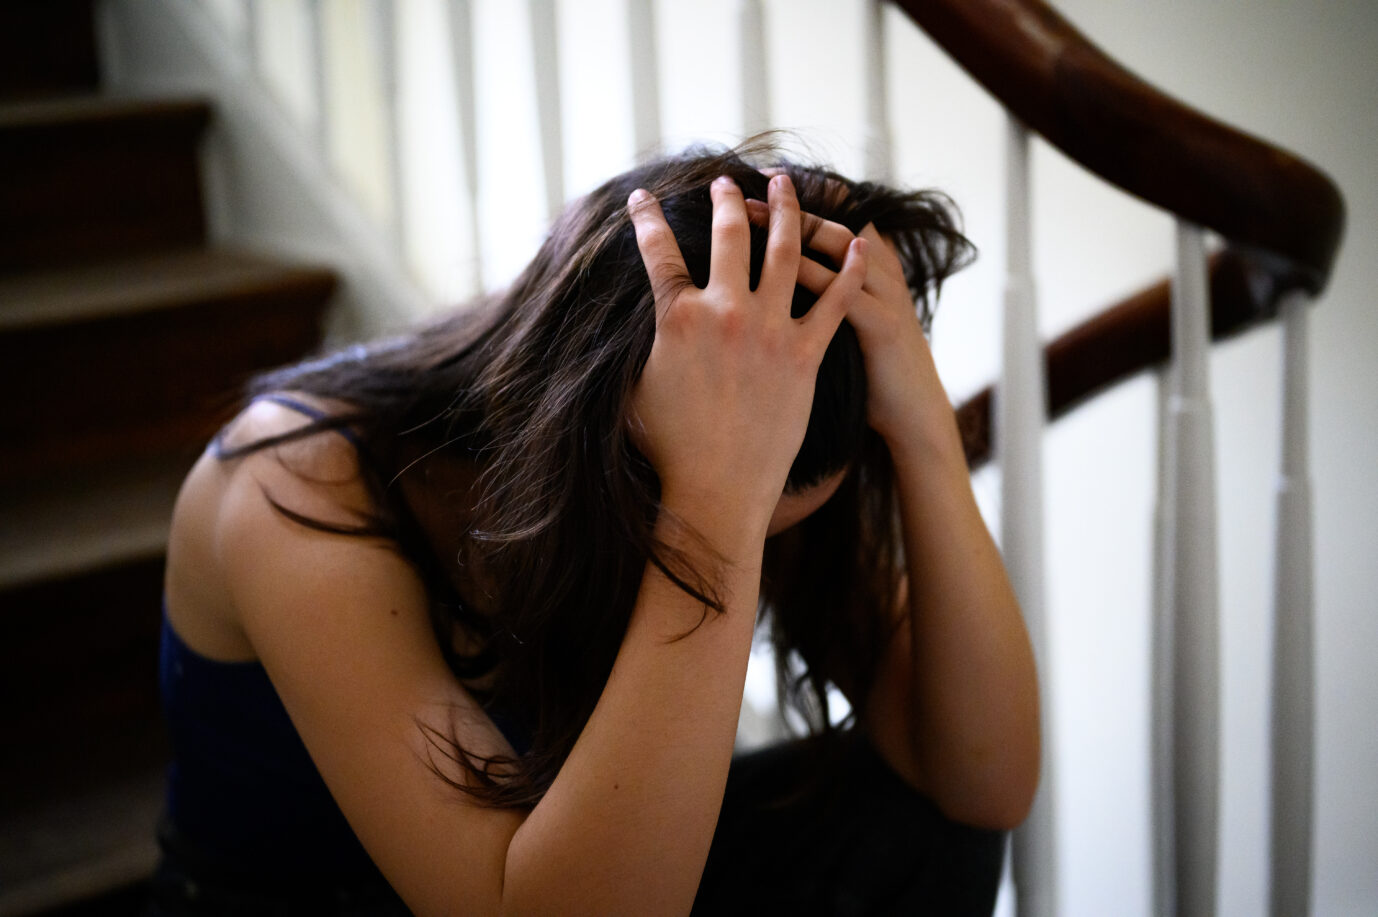 Auf dem Foto zeigt sich eine erwachsene Frau verzweifelt und hält ihren Kopf, während sie auf der Treppe sitzt. Dies soll die Hilflosigkeit der Frauen gegenüber Tätern symbolisieren. Vergangenes Jahr vermeldete die Berliner Polizei 111 Gruppenvergewaltigungen. (Symbolbild)